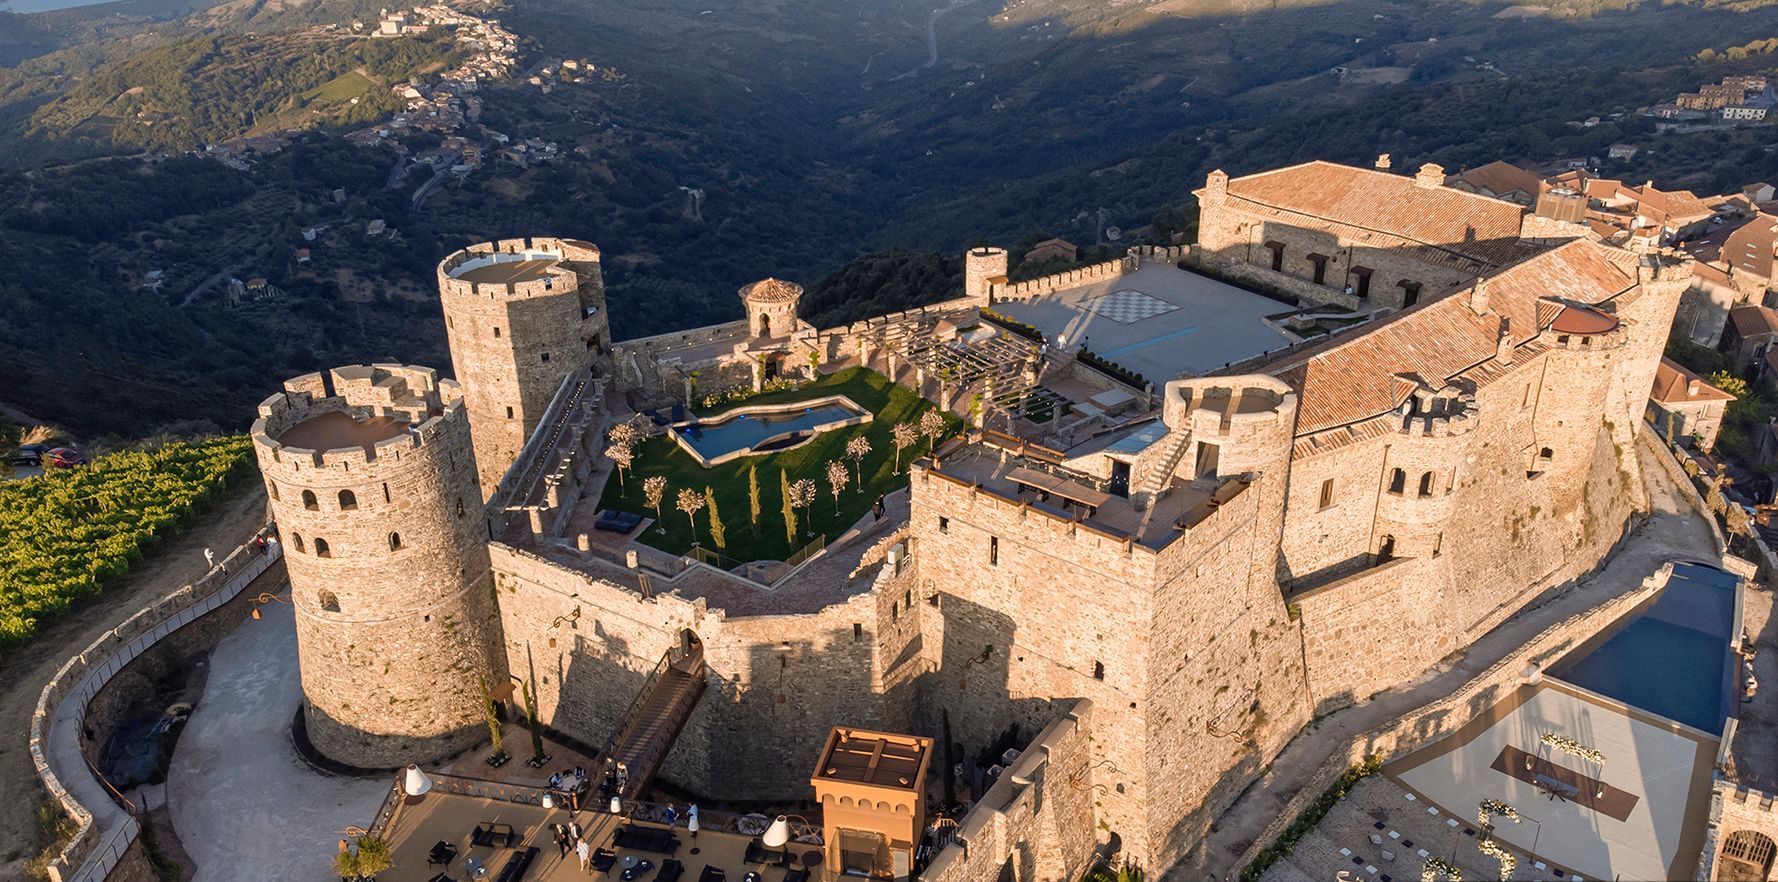 Anteprima OlivitalyMed: presentata al Castello di Rocca Cilento